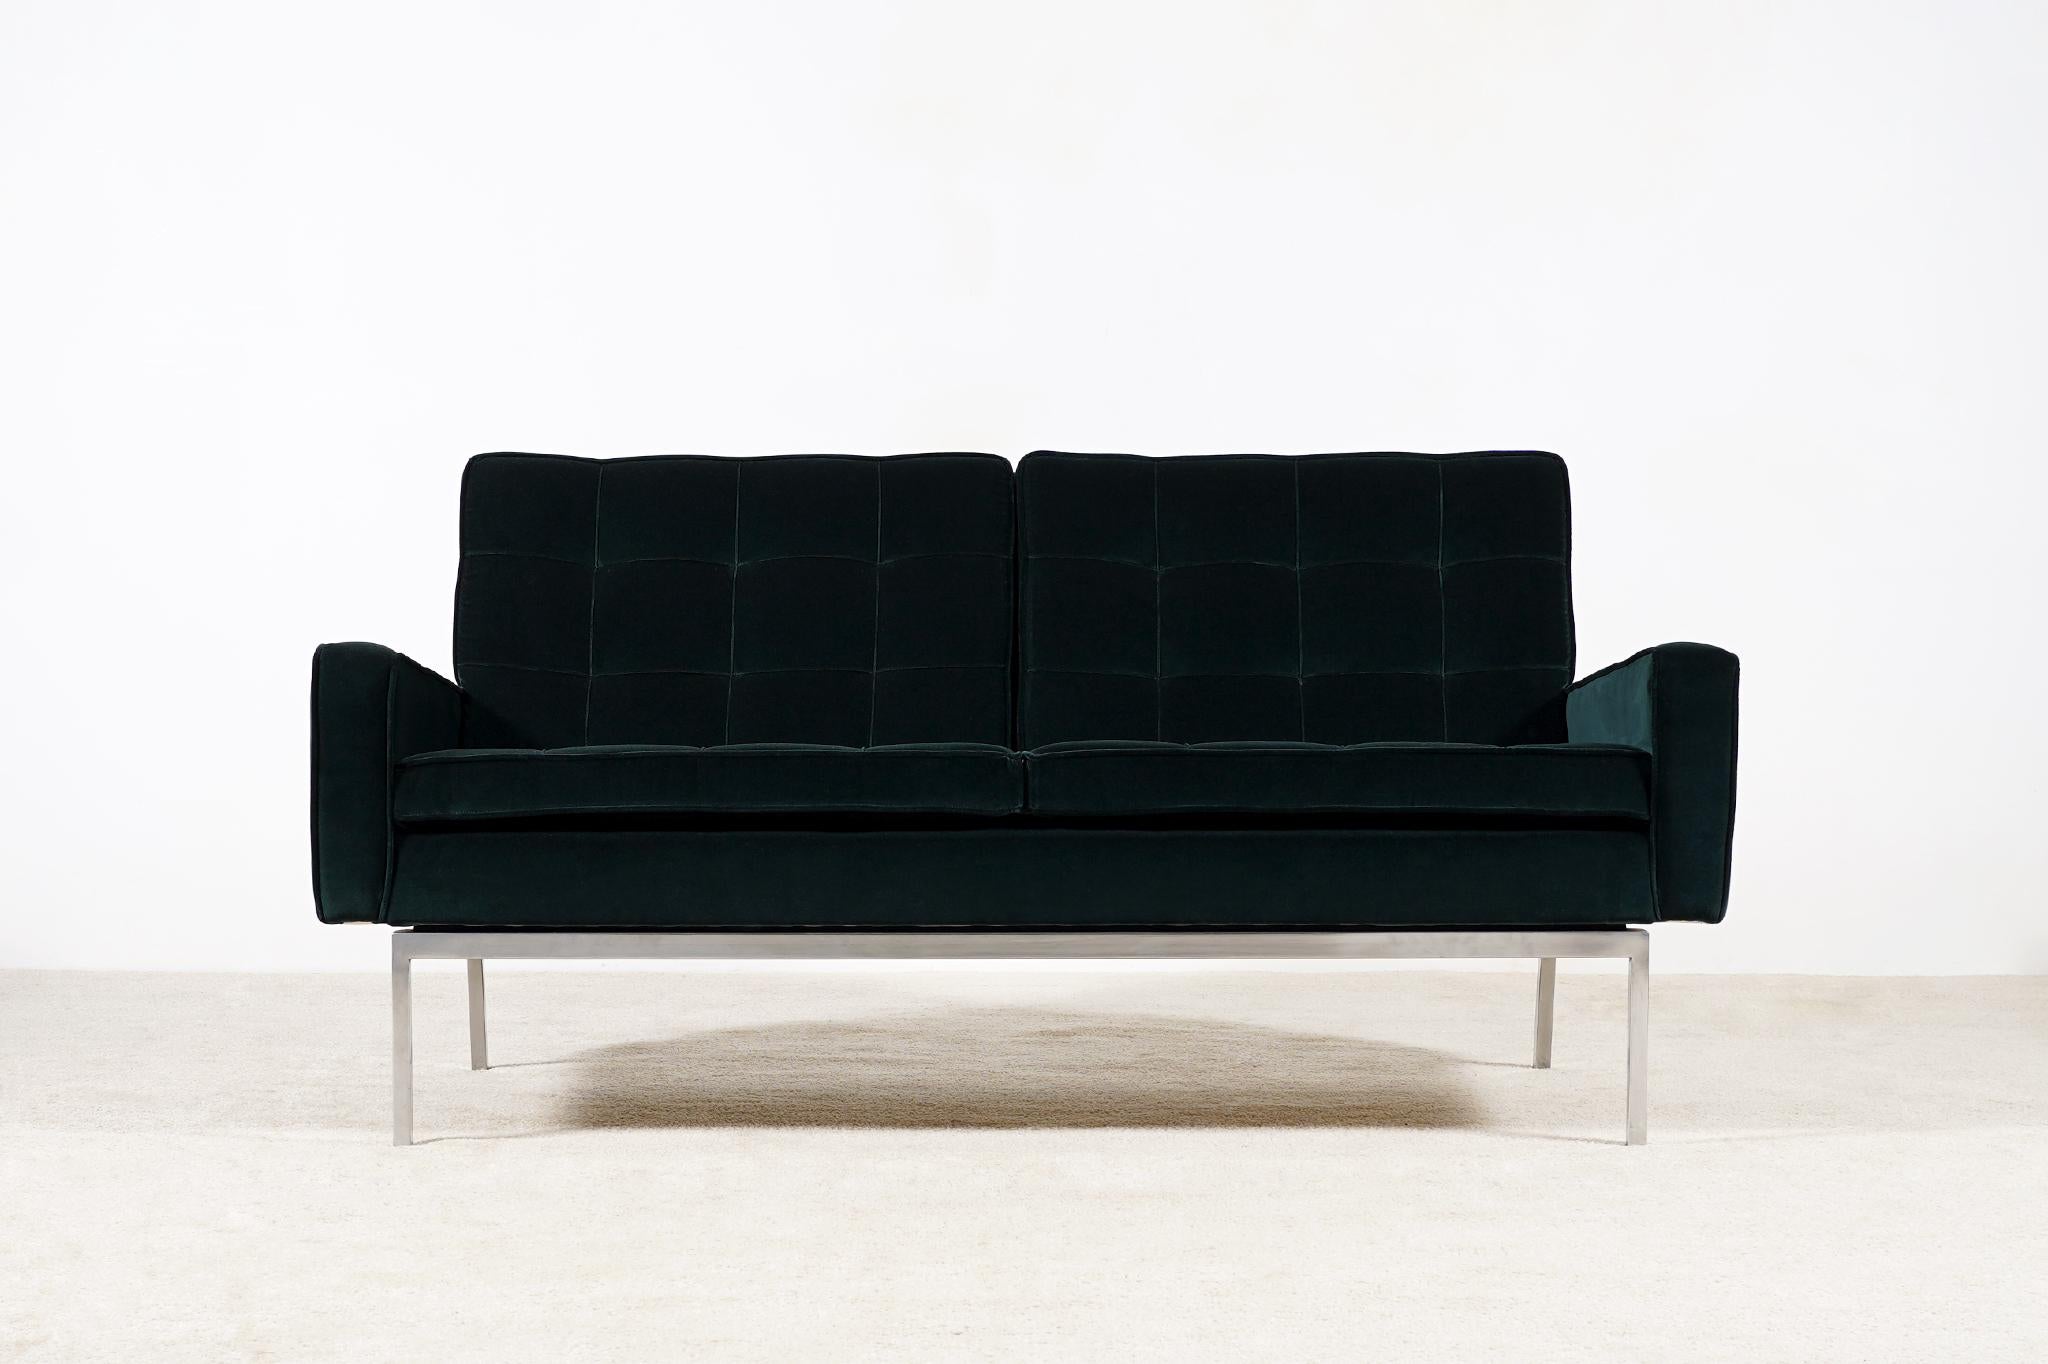 Zweisitziges Sofa Modell 66A, entworfen von Florence Knoll und hergestellt von Knoll International, um 1960.
Dieser Stuhl wurde nur von 1958 bis 1975 hergestellt.
Neu gepolstert mit dunkelgrünem Samt aus der Kvadrat Raf Simons Collection.
Sockel